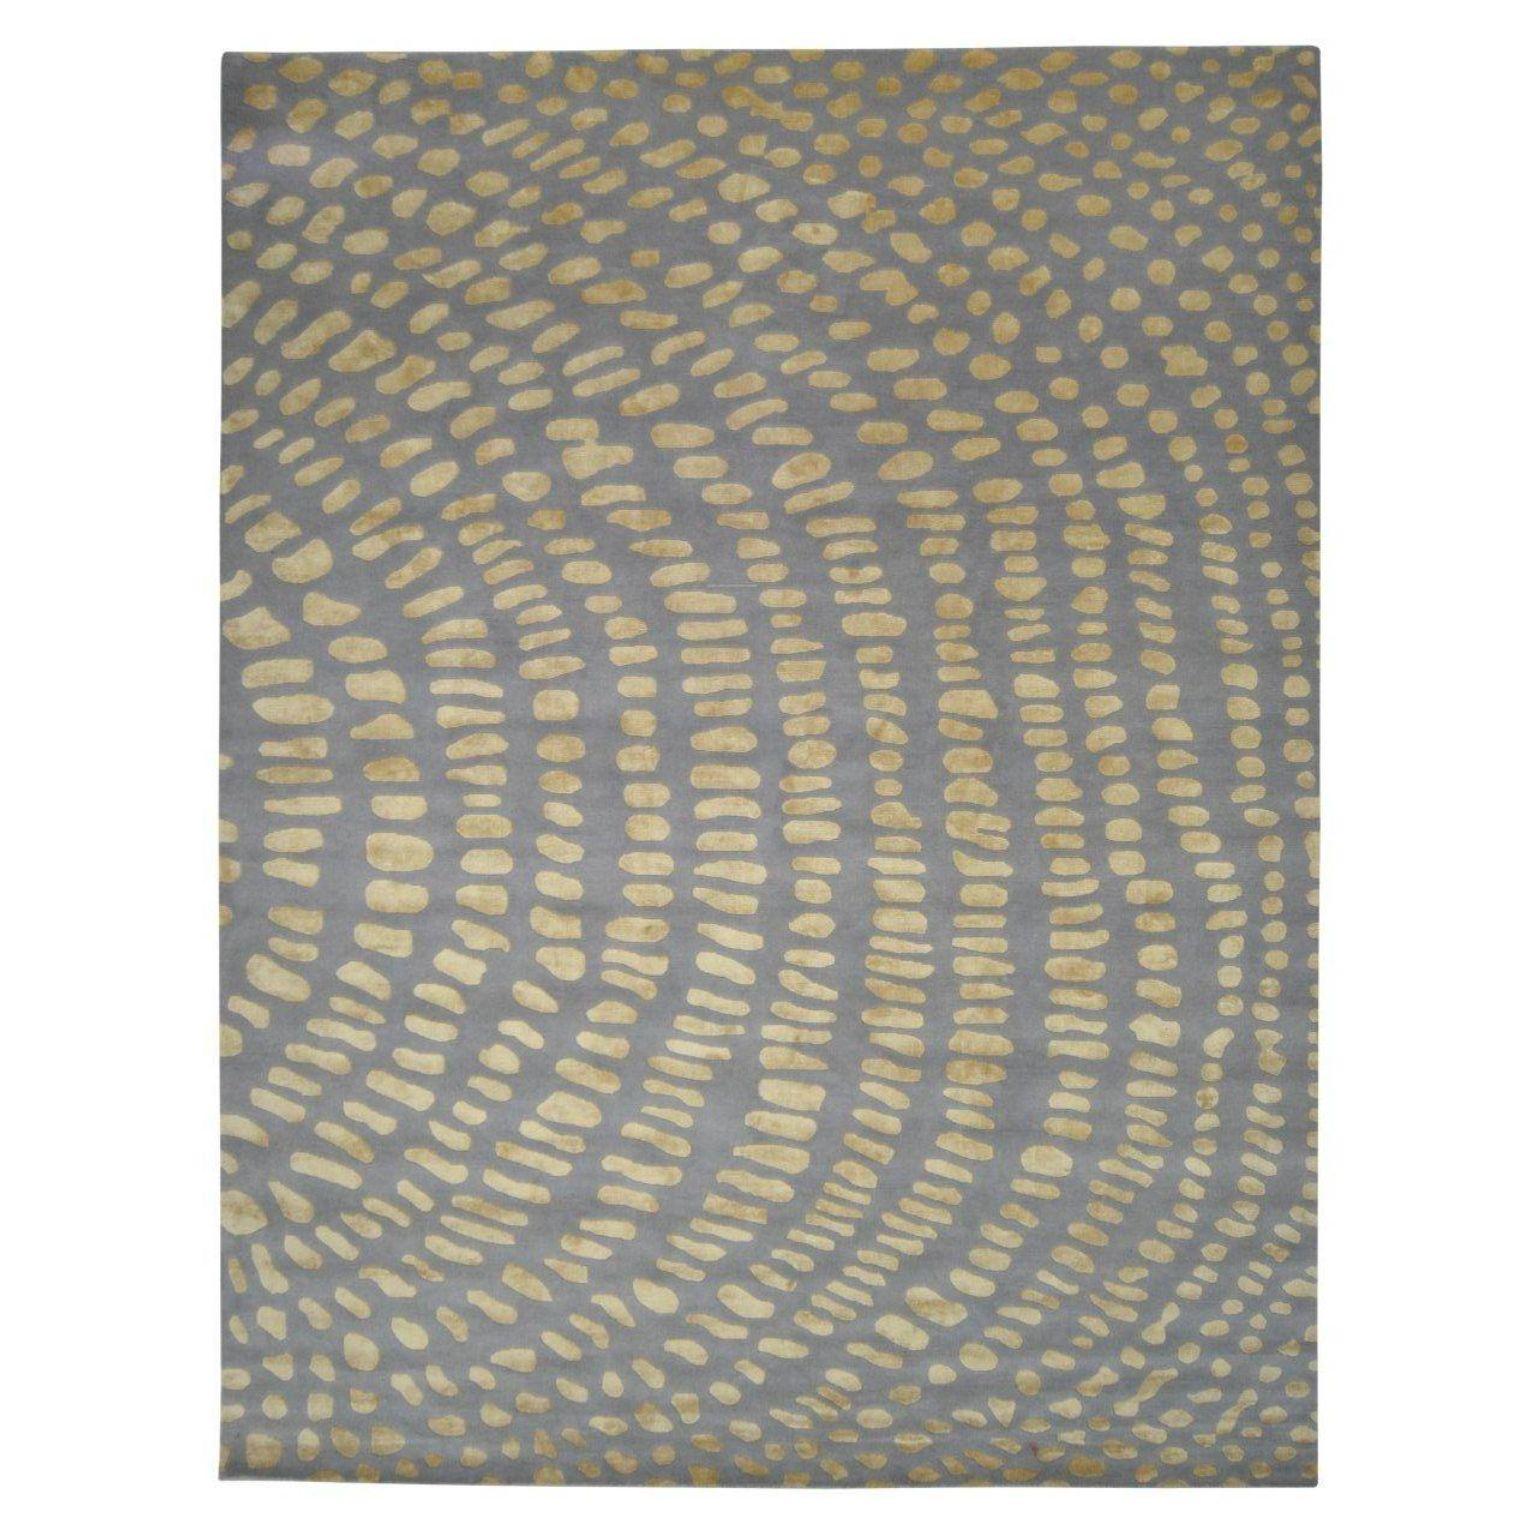 Großer Teppich mit Aborigine-Schuppen von Art & Loom
Abmessungen: T304,8 x H426,7 cm
MATERIALIEN: Neuseeländische Wolle mit, chinesischer Seide - einfache Florhöhe
Auch in anderen Abmessungen erhältlich.

Samantha Gallacher hatte schon immer